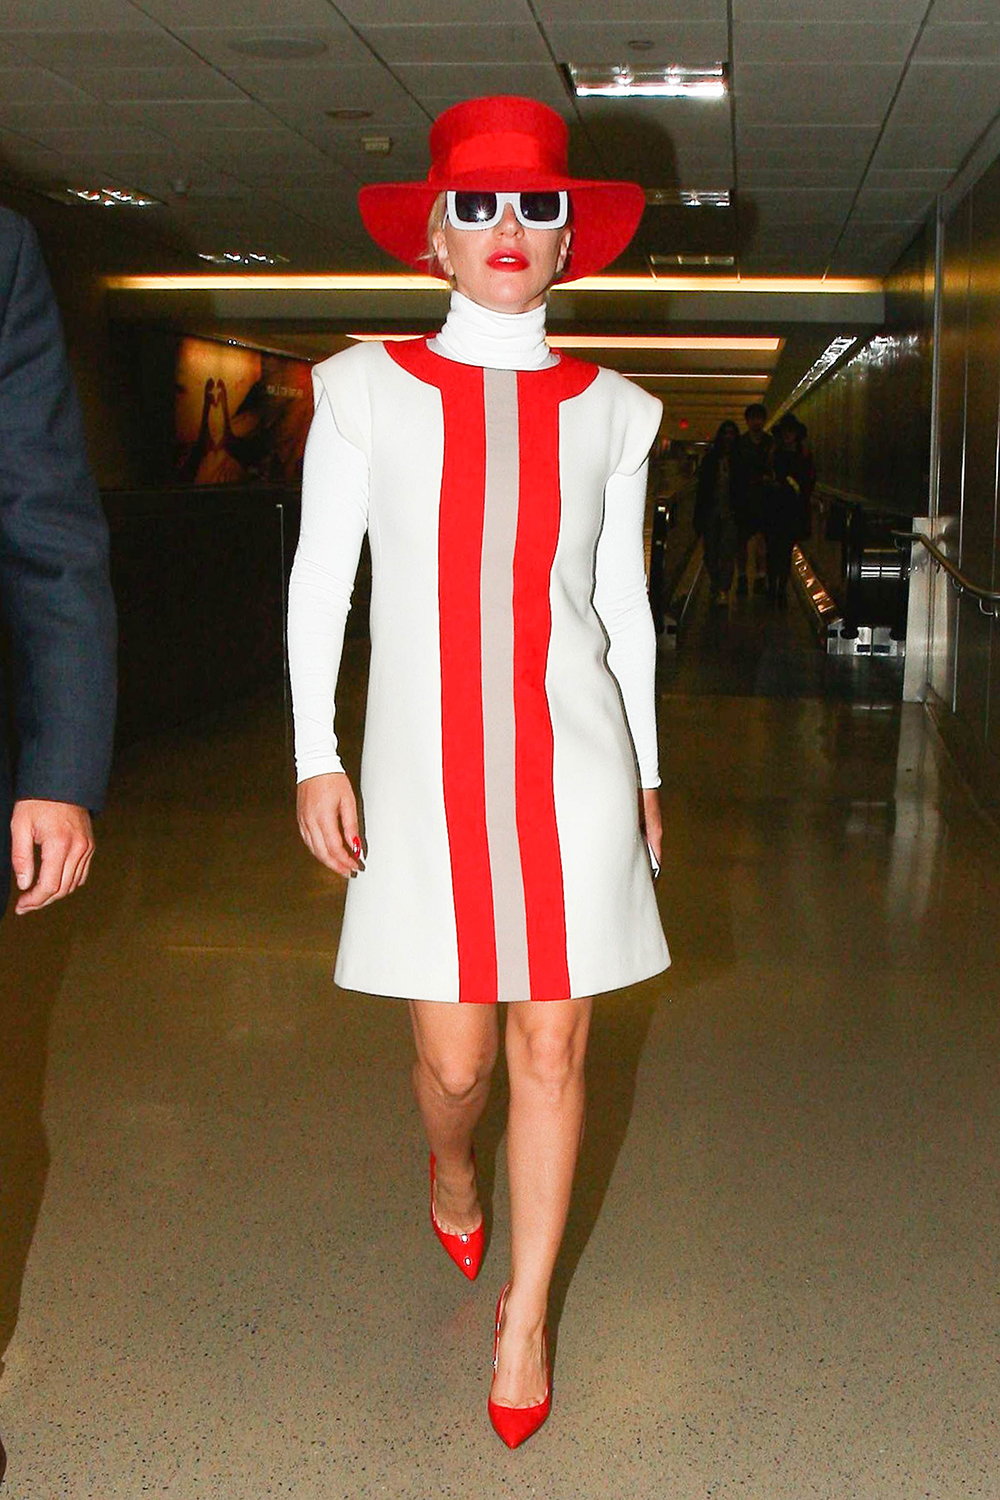 Lady Gaga in Jonathan Saunders Fall 2015 at LAX airport.